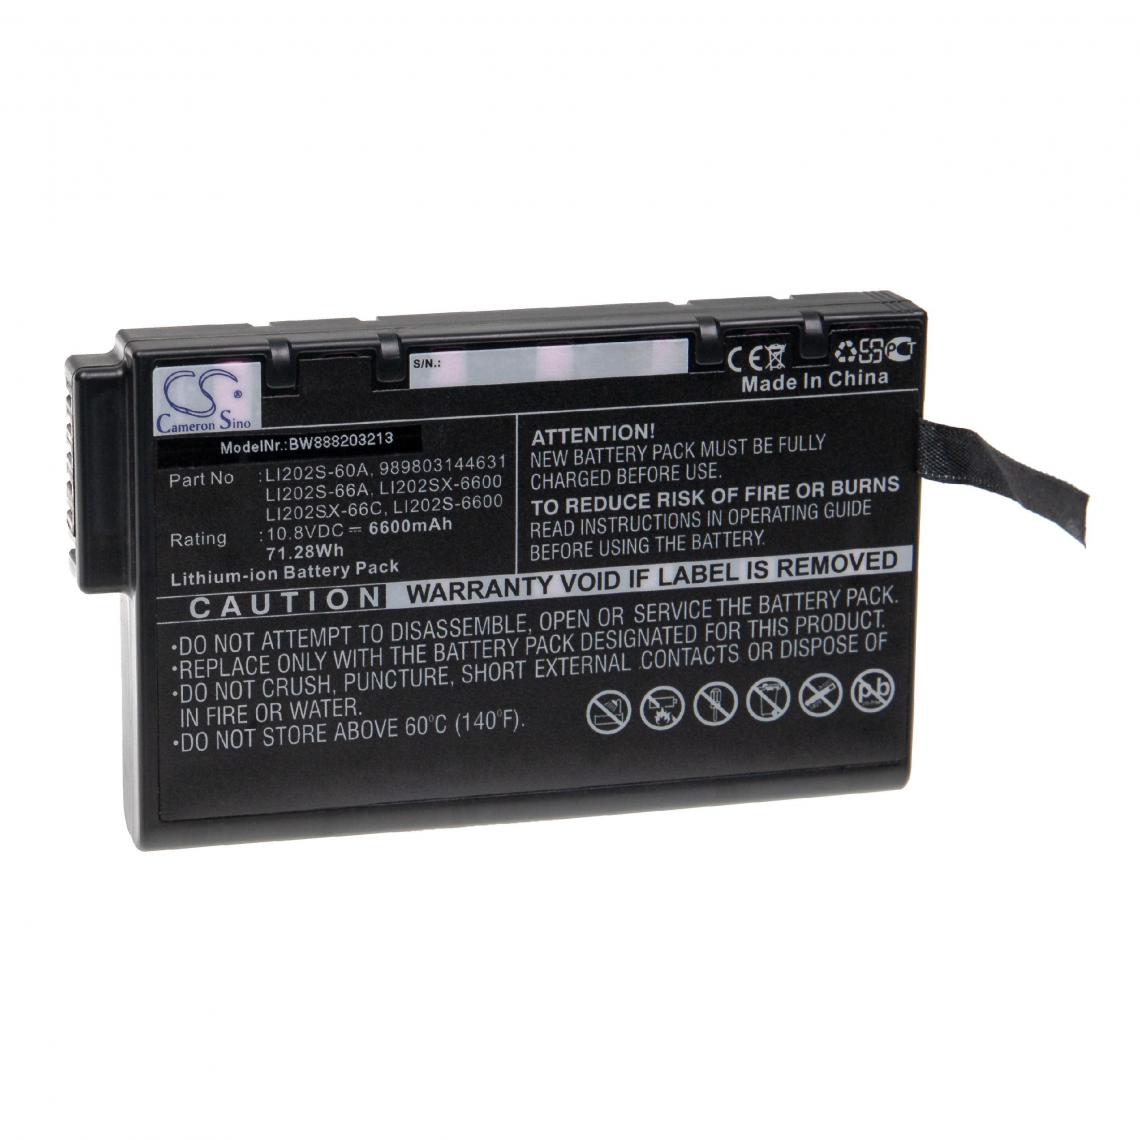 Vhbw - vhbw Batterie compatible avec Kanomax 3910 outil de mesure (6 600mAh, 10,8V, Li-ion) - Piles rechargeables